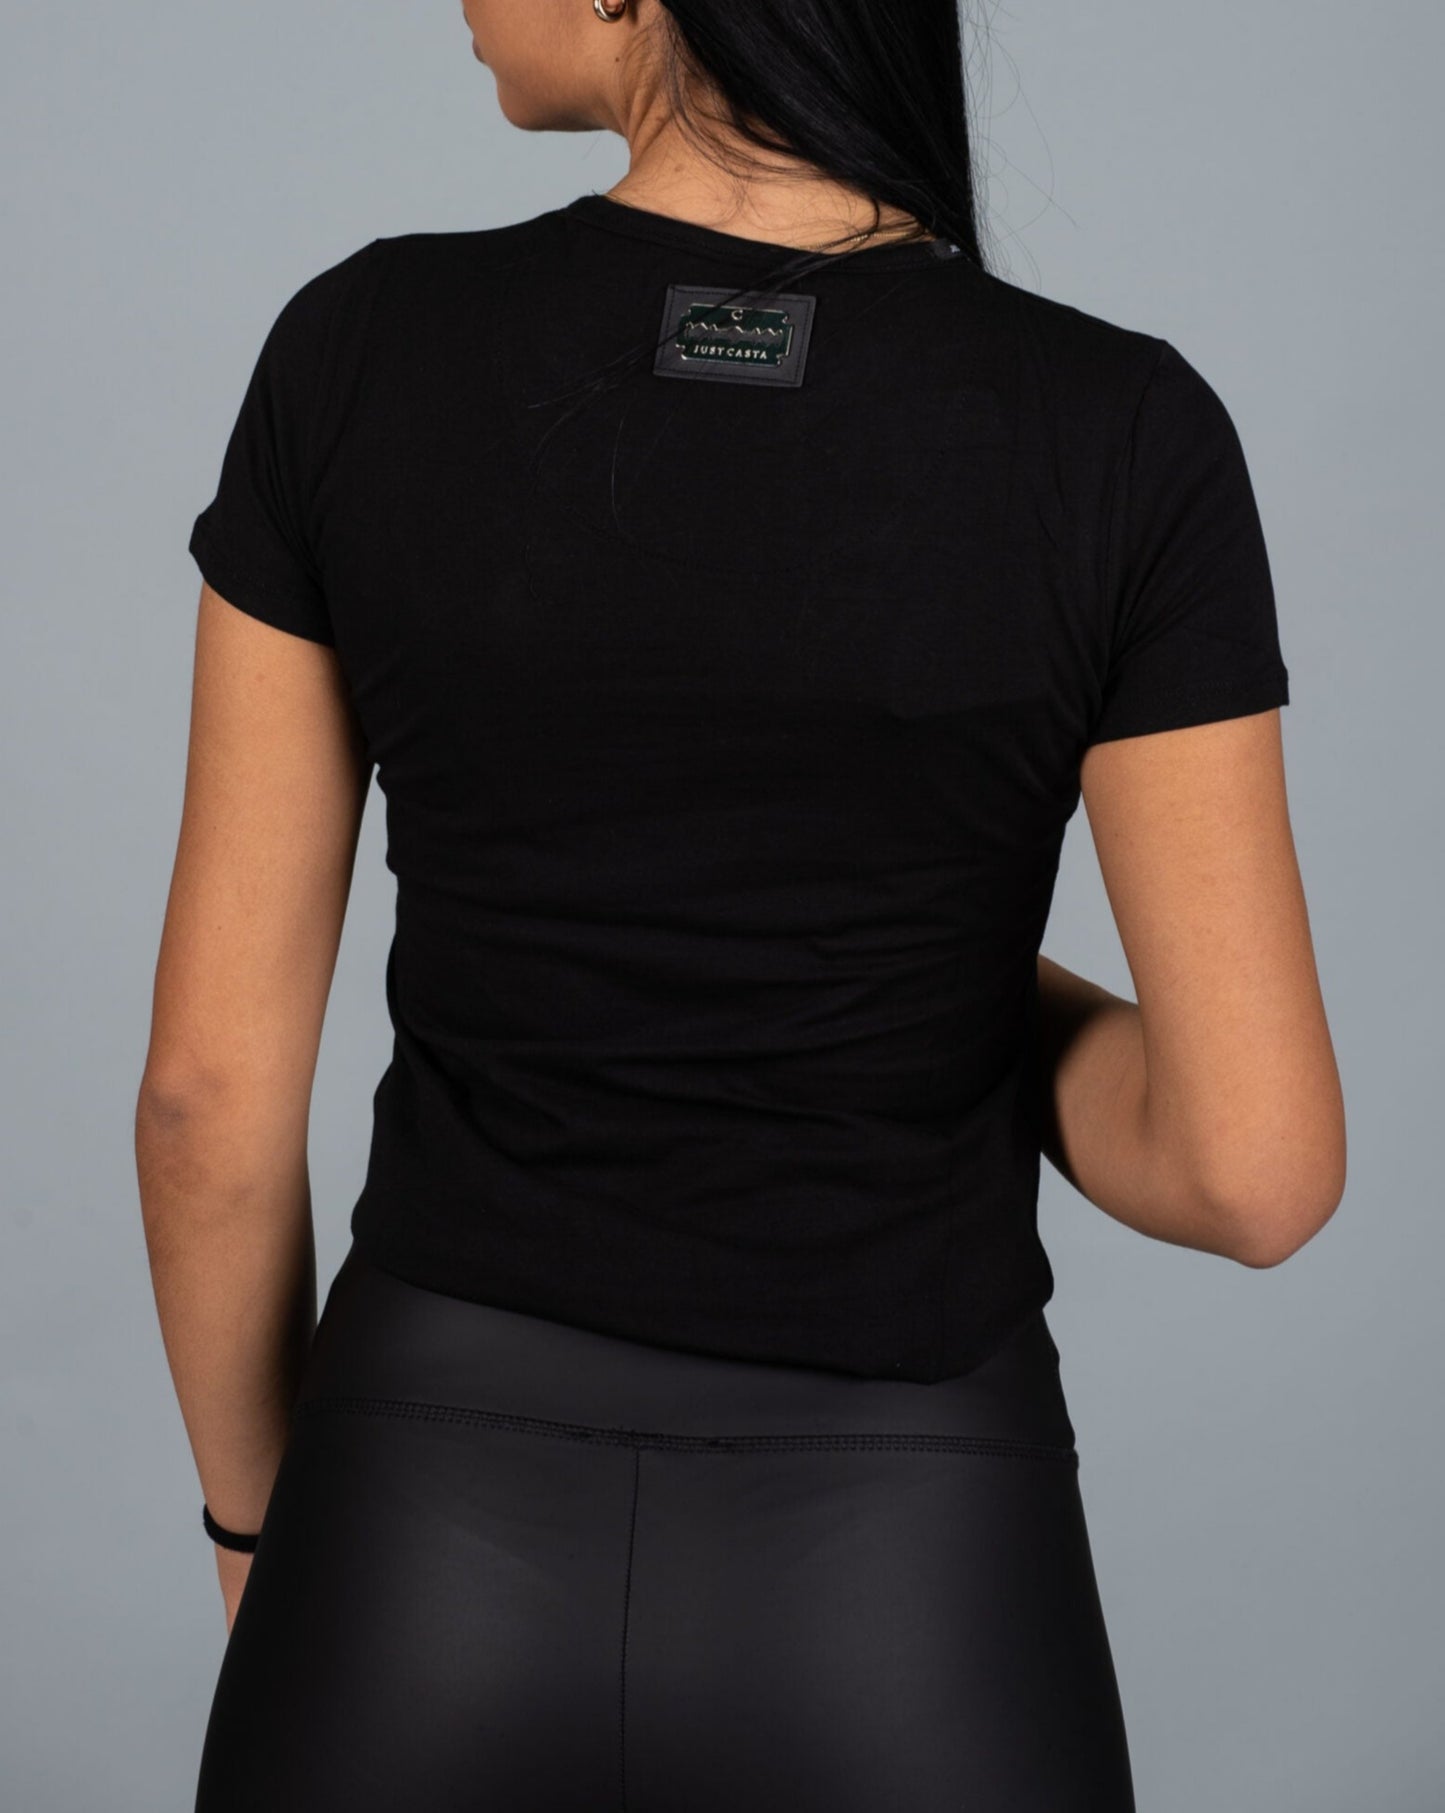 Дамска тениска BALLENA  https://bvseductive.com/products/дамска-тениска-ballena  100 % памук тренди дамска тениска в черен цвят изработена от мека памучна материя с овално деколте и удобна вталена кройка с атрактивна щампа отпред комбинативен модел, подходящ за различни модни съчетания